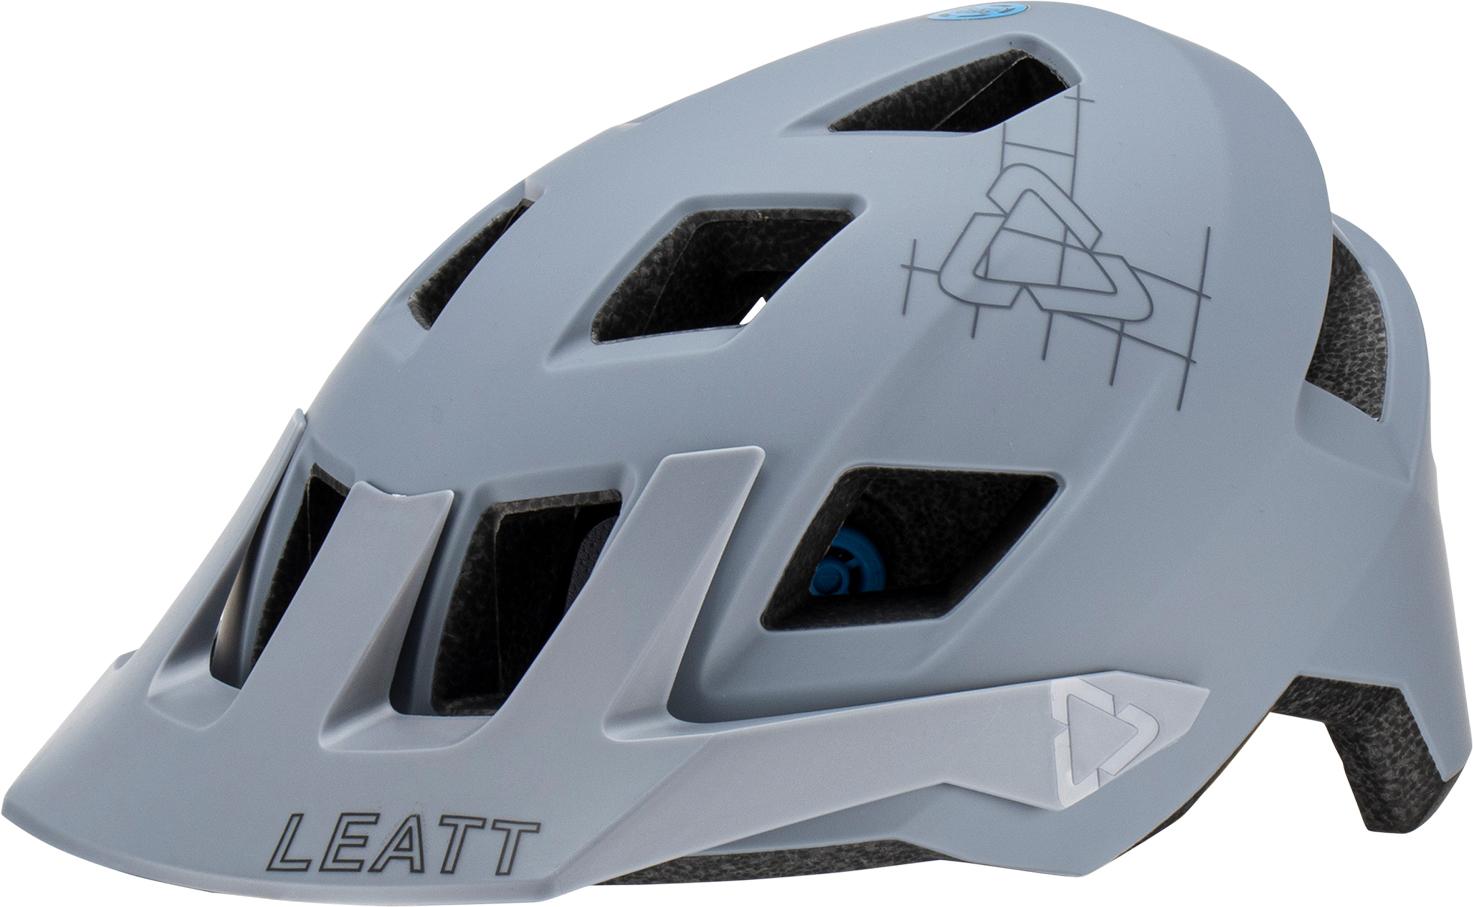 Leatt Mtb All Mountain 1.0 Helmet - Titanium